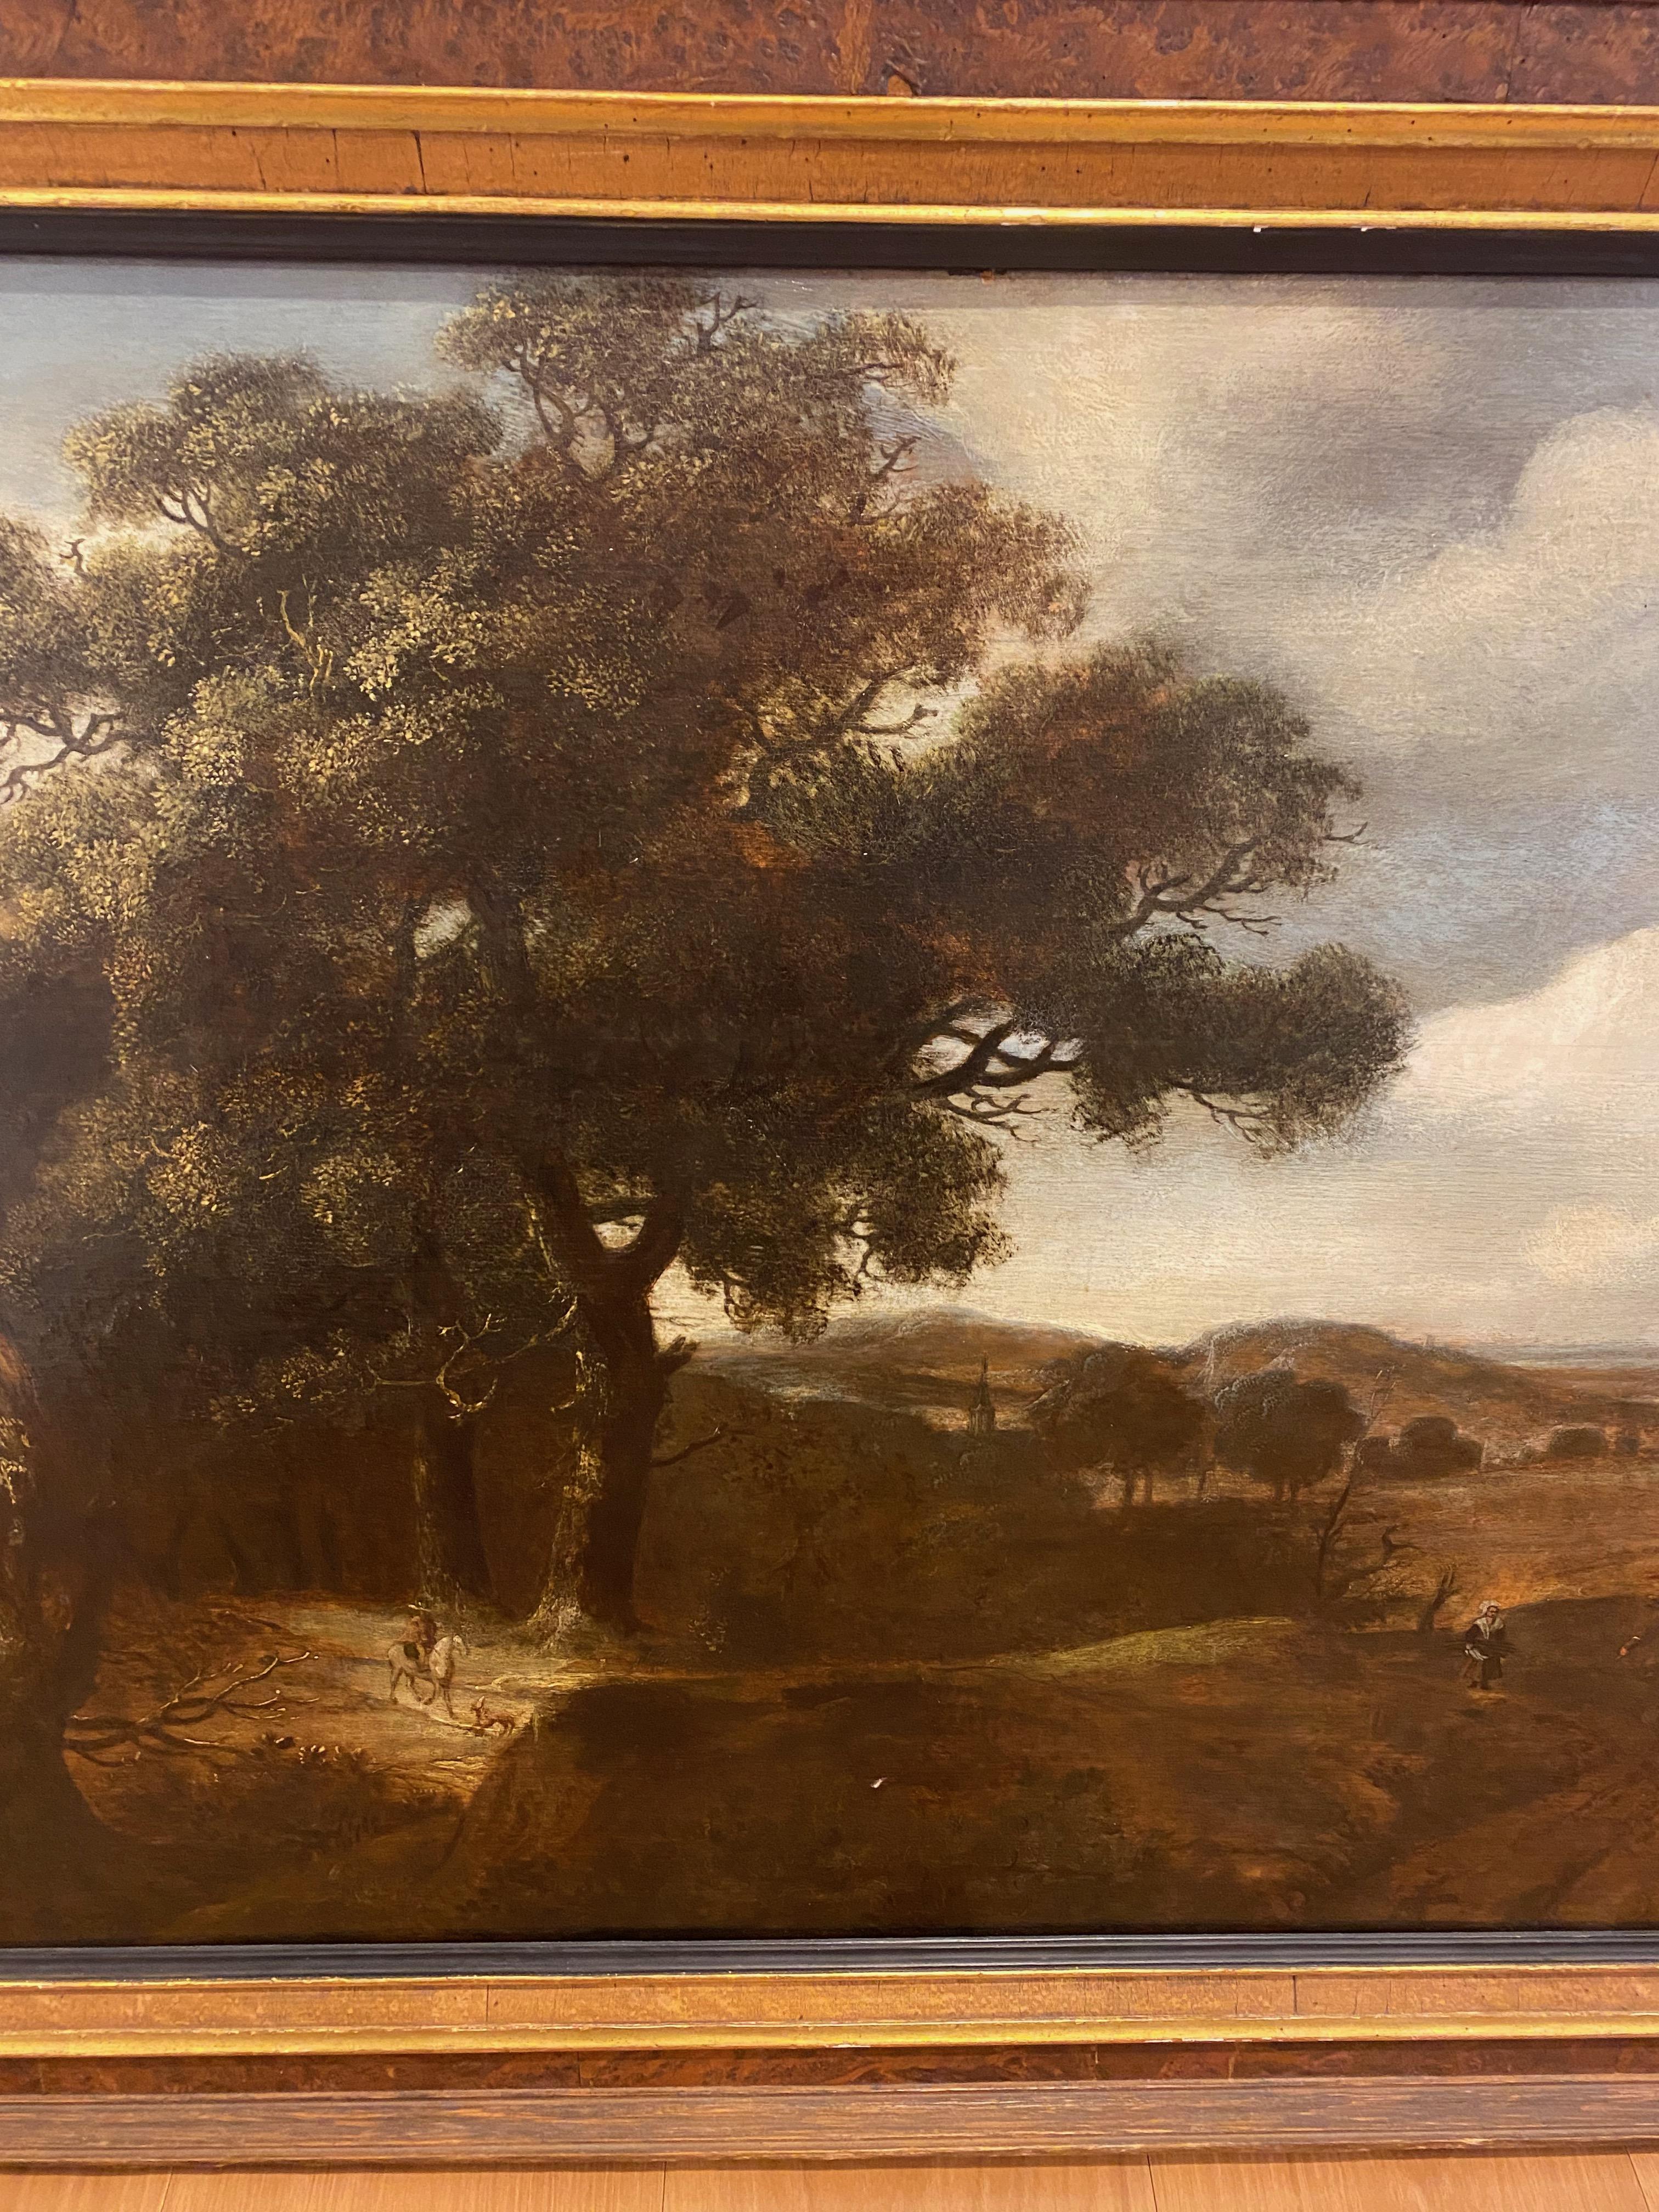 Holländische Landschaft, Nachfolger von Jacob van Ruisdael, undeutlich signiert, ca. 1720

Diese große Landschaft in Öl auf Karton wurde von einem Anhänger Jacob van Ruisdaels gemalt und ist undeutlich signiert. Es zeigt den weiten Blick in die